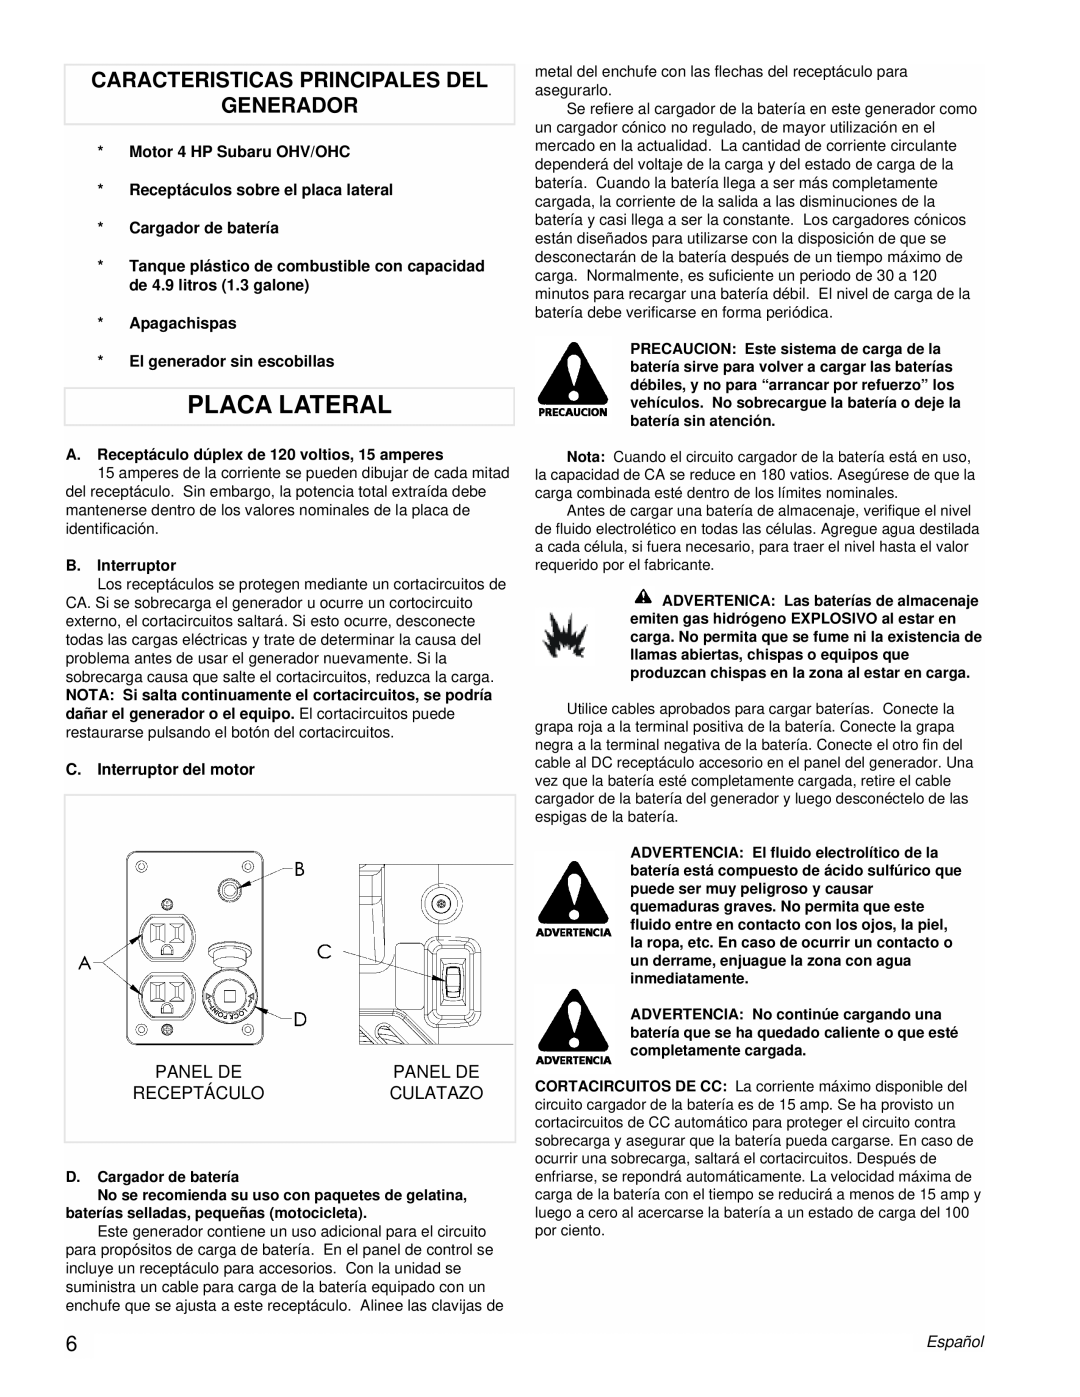 Coleman Powermate Generator, PM0431802.01 manual Placa Lateral, Caracteristicas Principales Del Generador, Español 